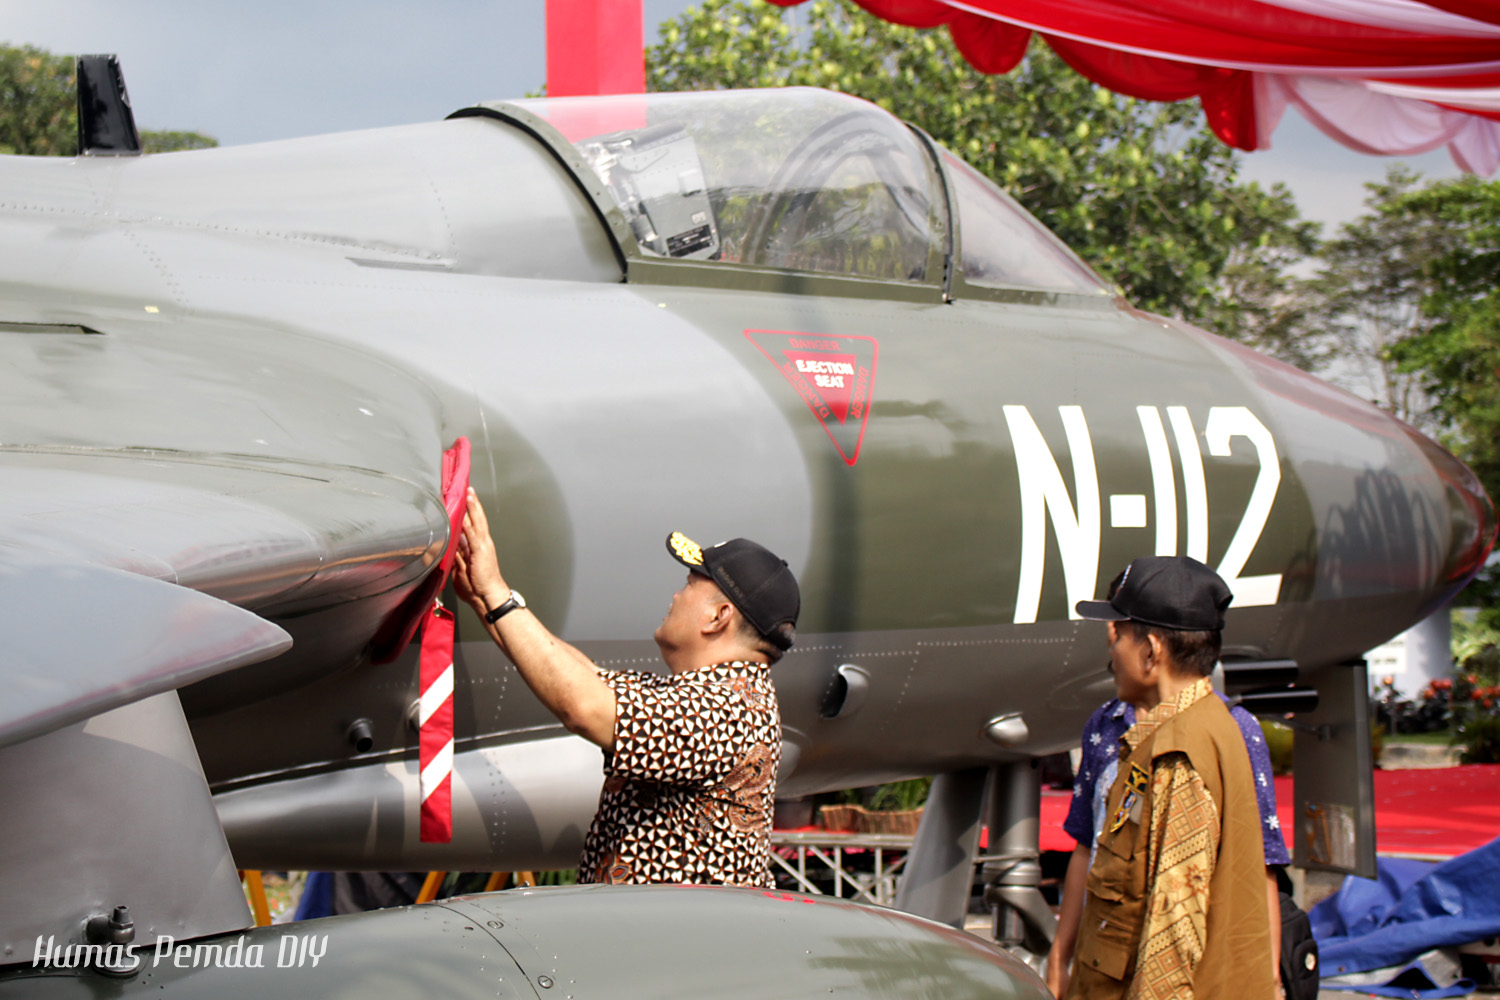   Wakil Gubernur DIY Terkesan Dengan Koleksi Pesawat Angkut TNI AU